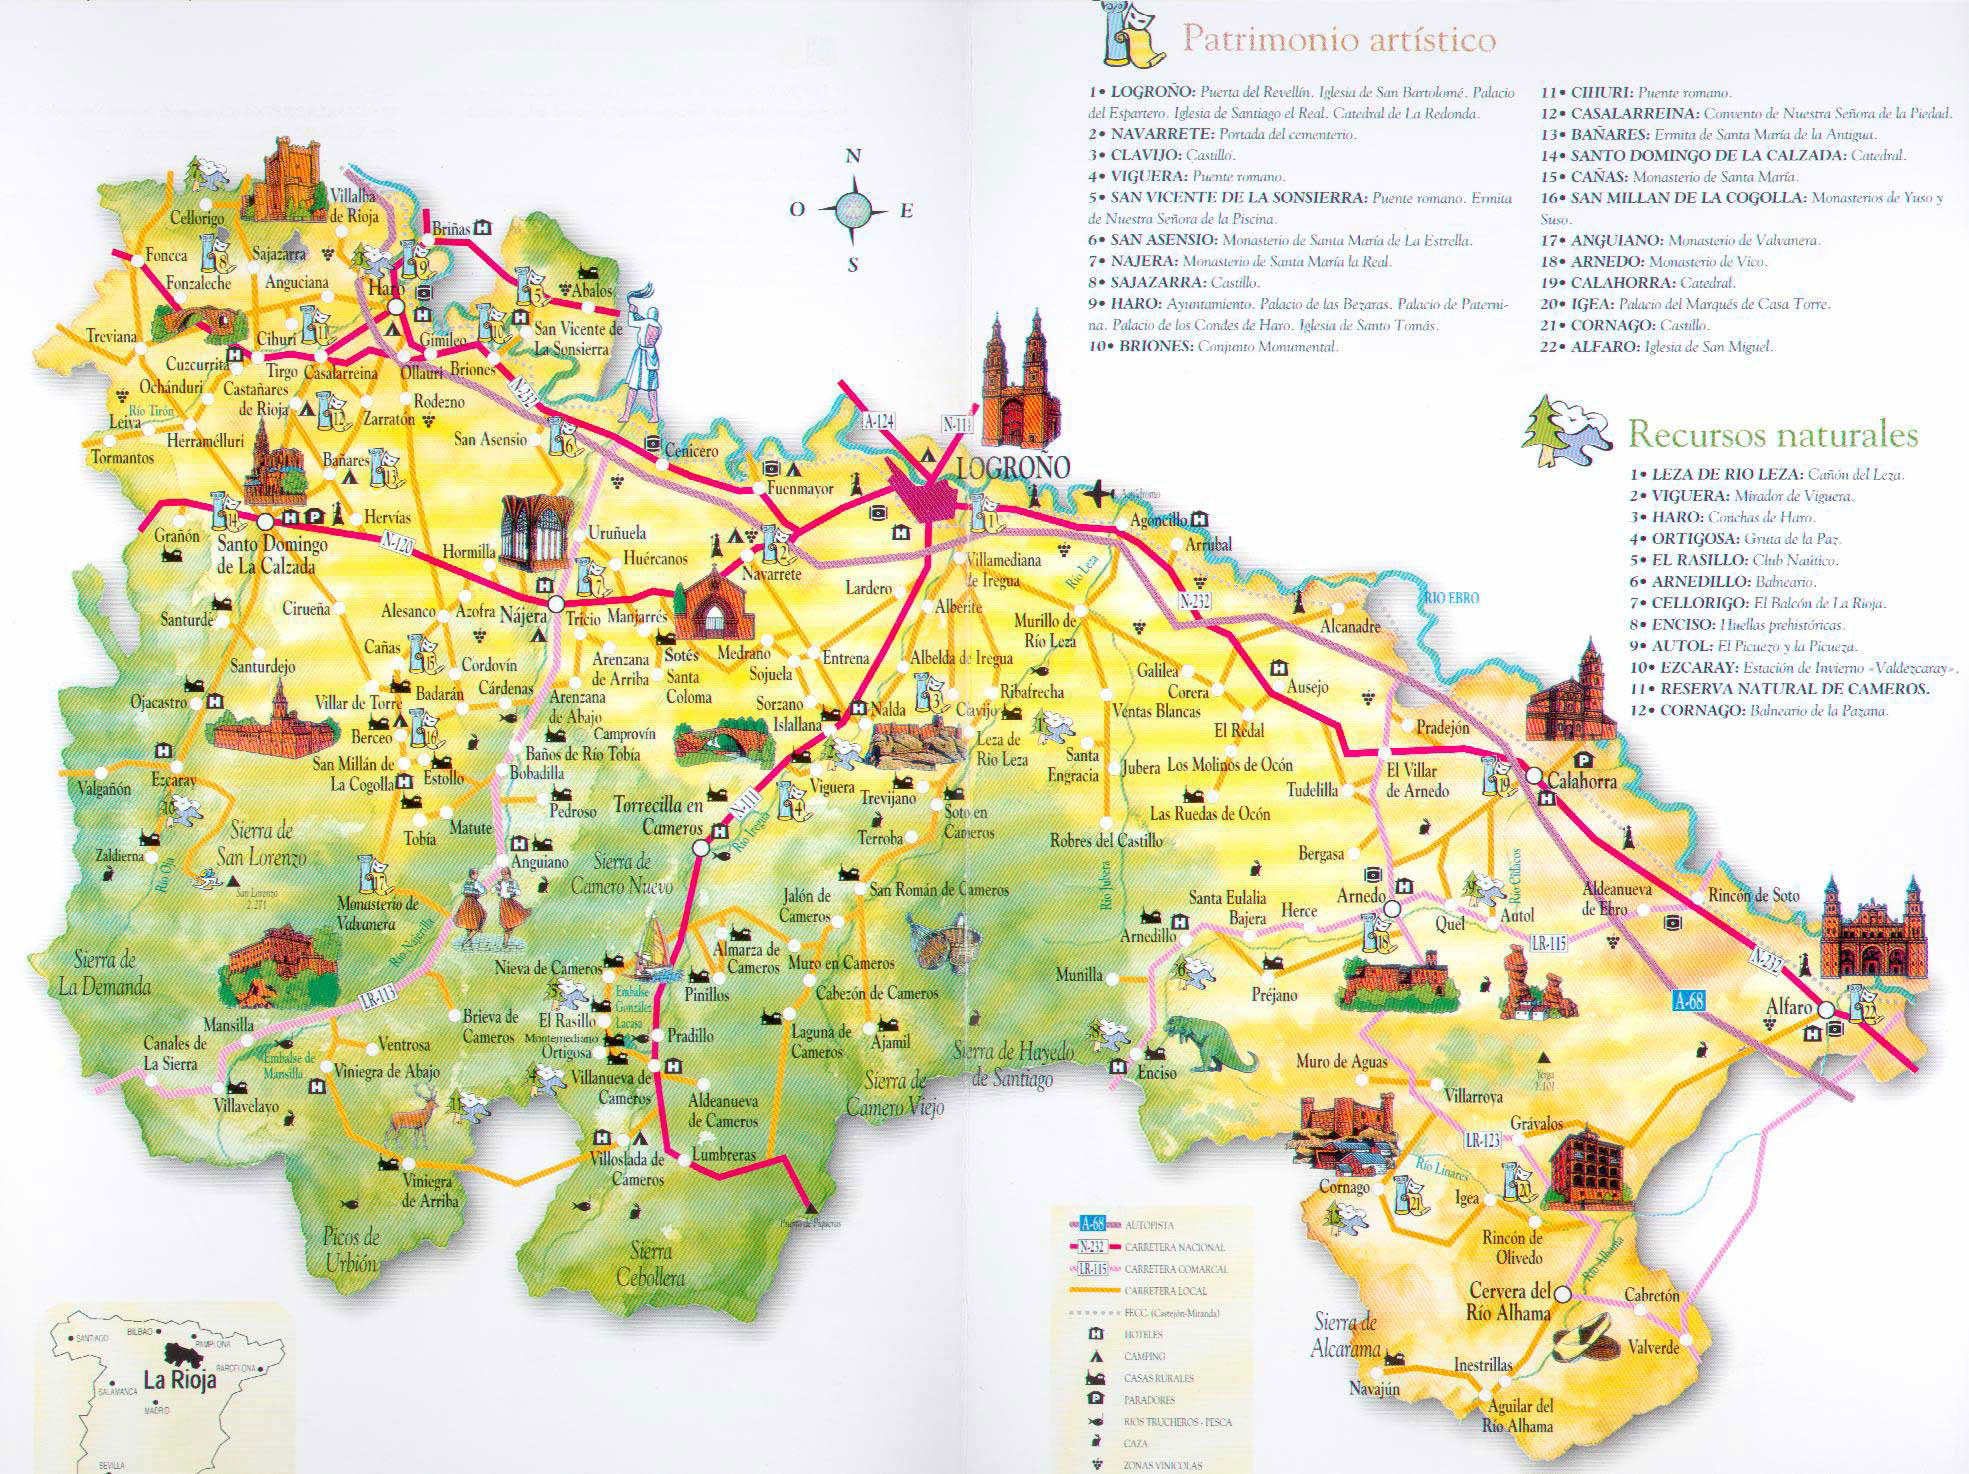 Mapa turístico de La Rioja